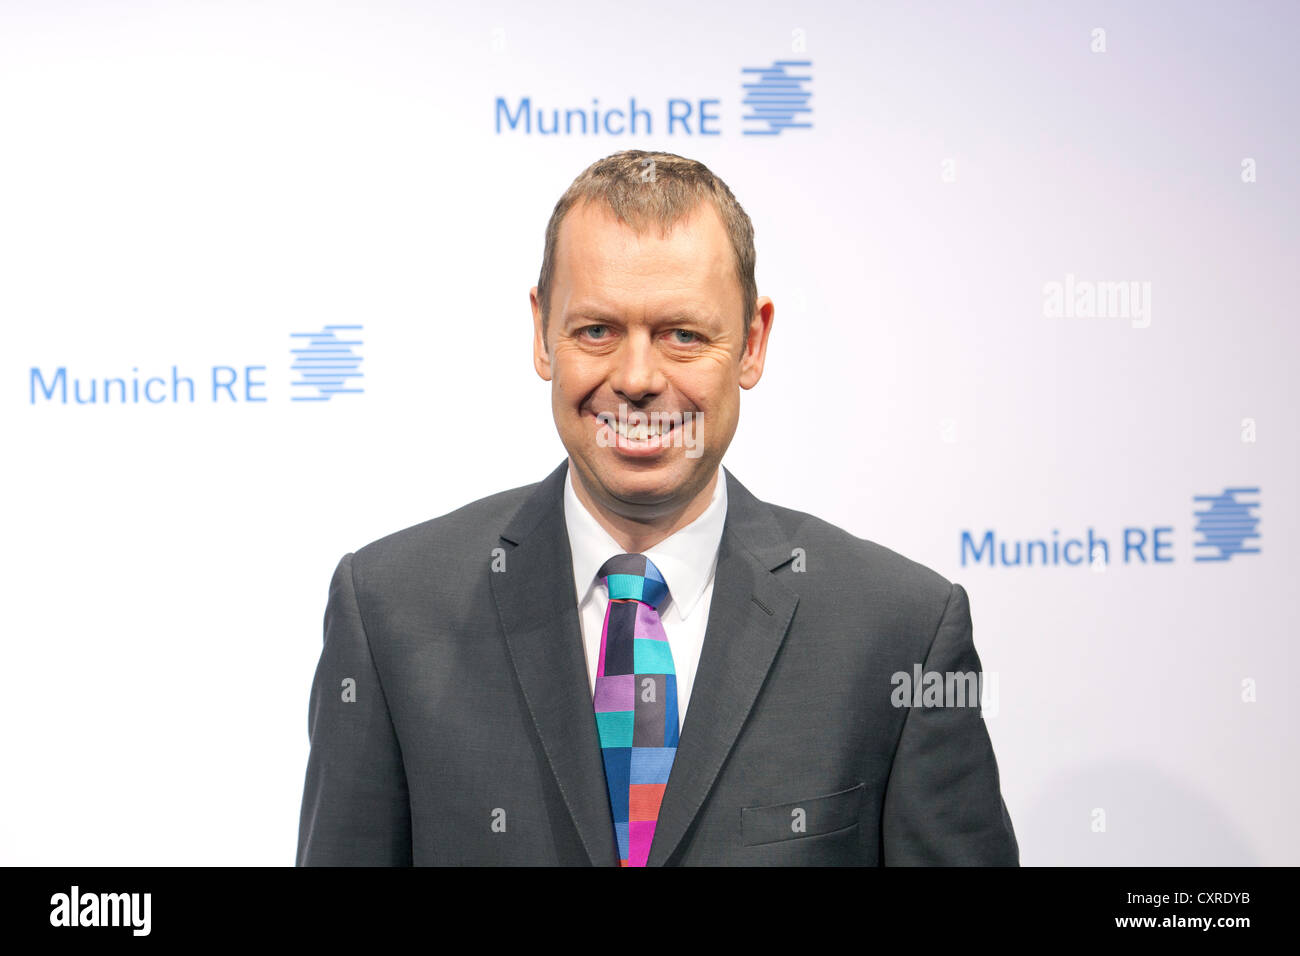 Torsten Oletzky, miembro de la junta directiva de la aseguradora Munich Re y CEO del Grupo Asegurador Ergo, durante la prensa Foto de stock